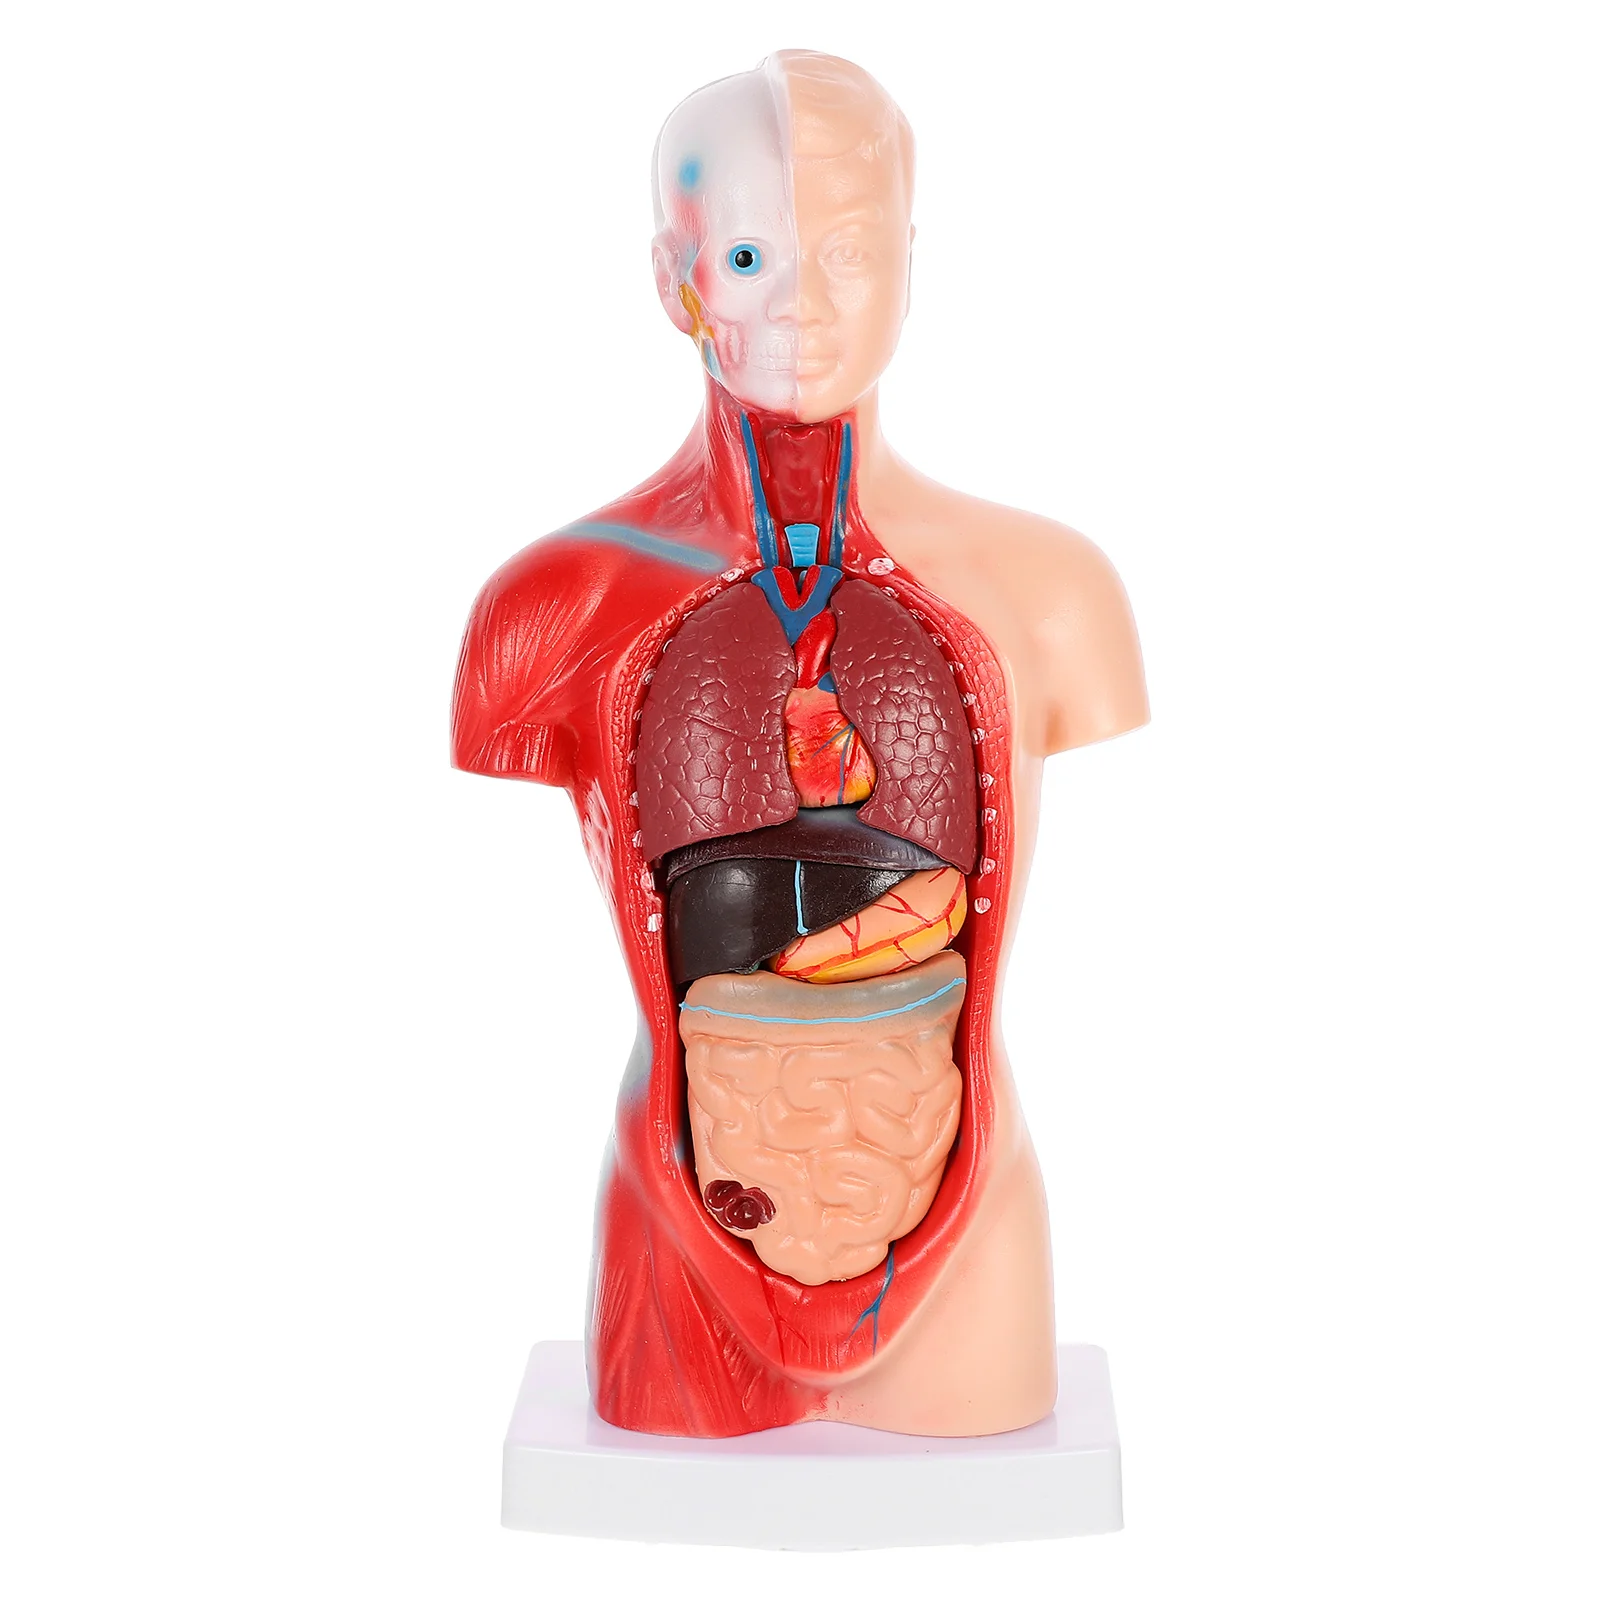 

1 комплект, анатомическая модель человеческих внутренних органов